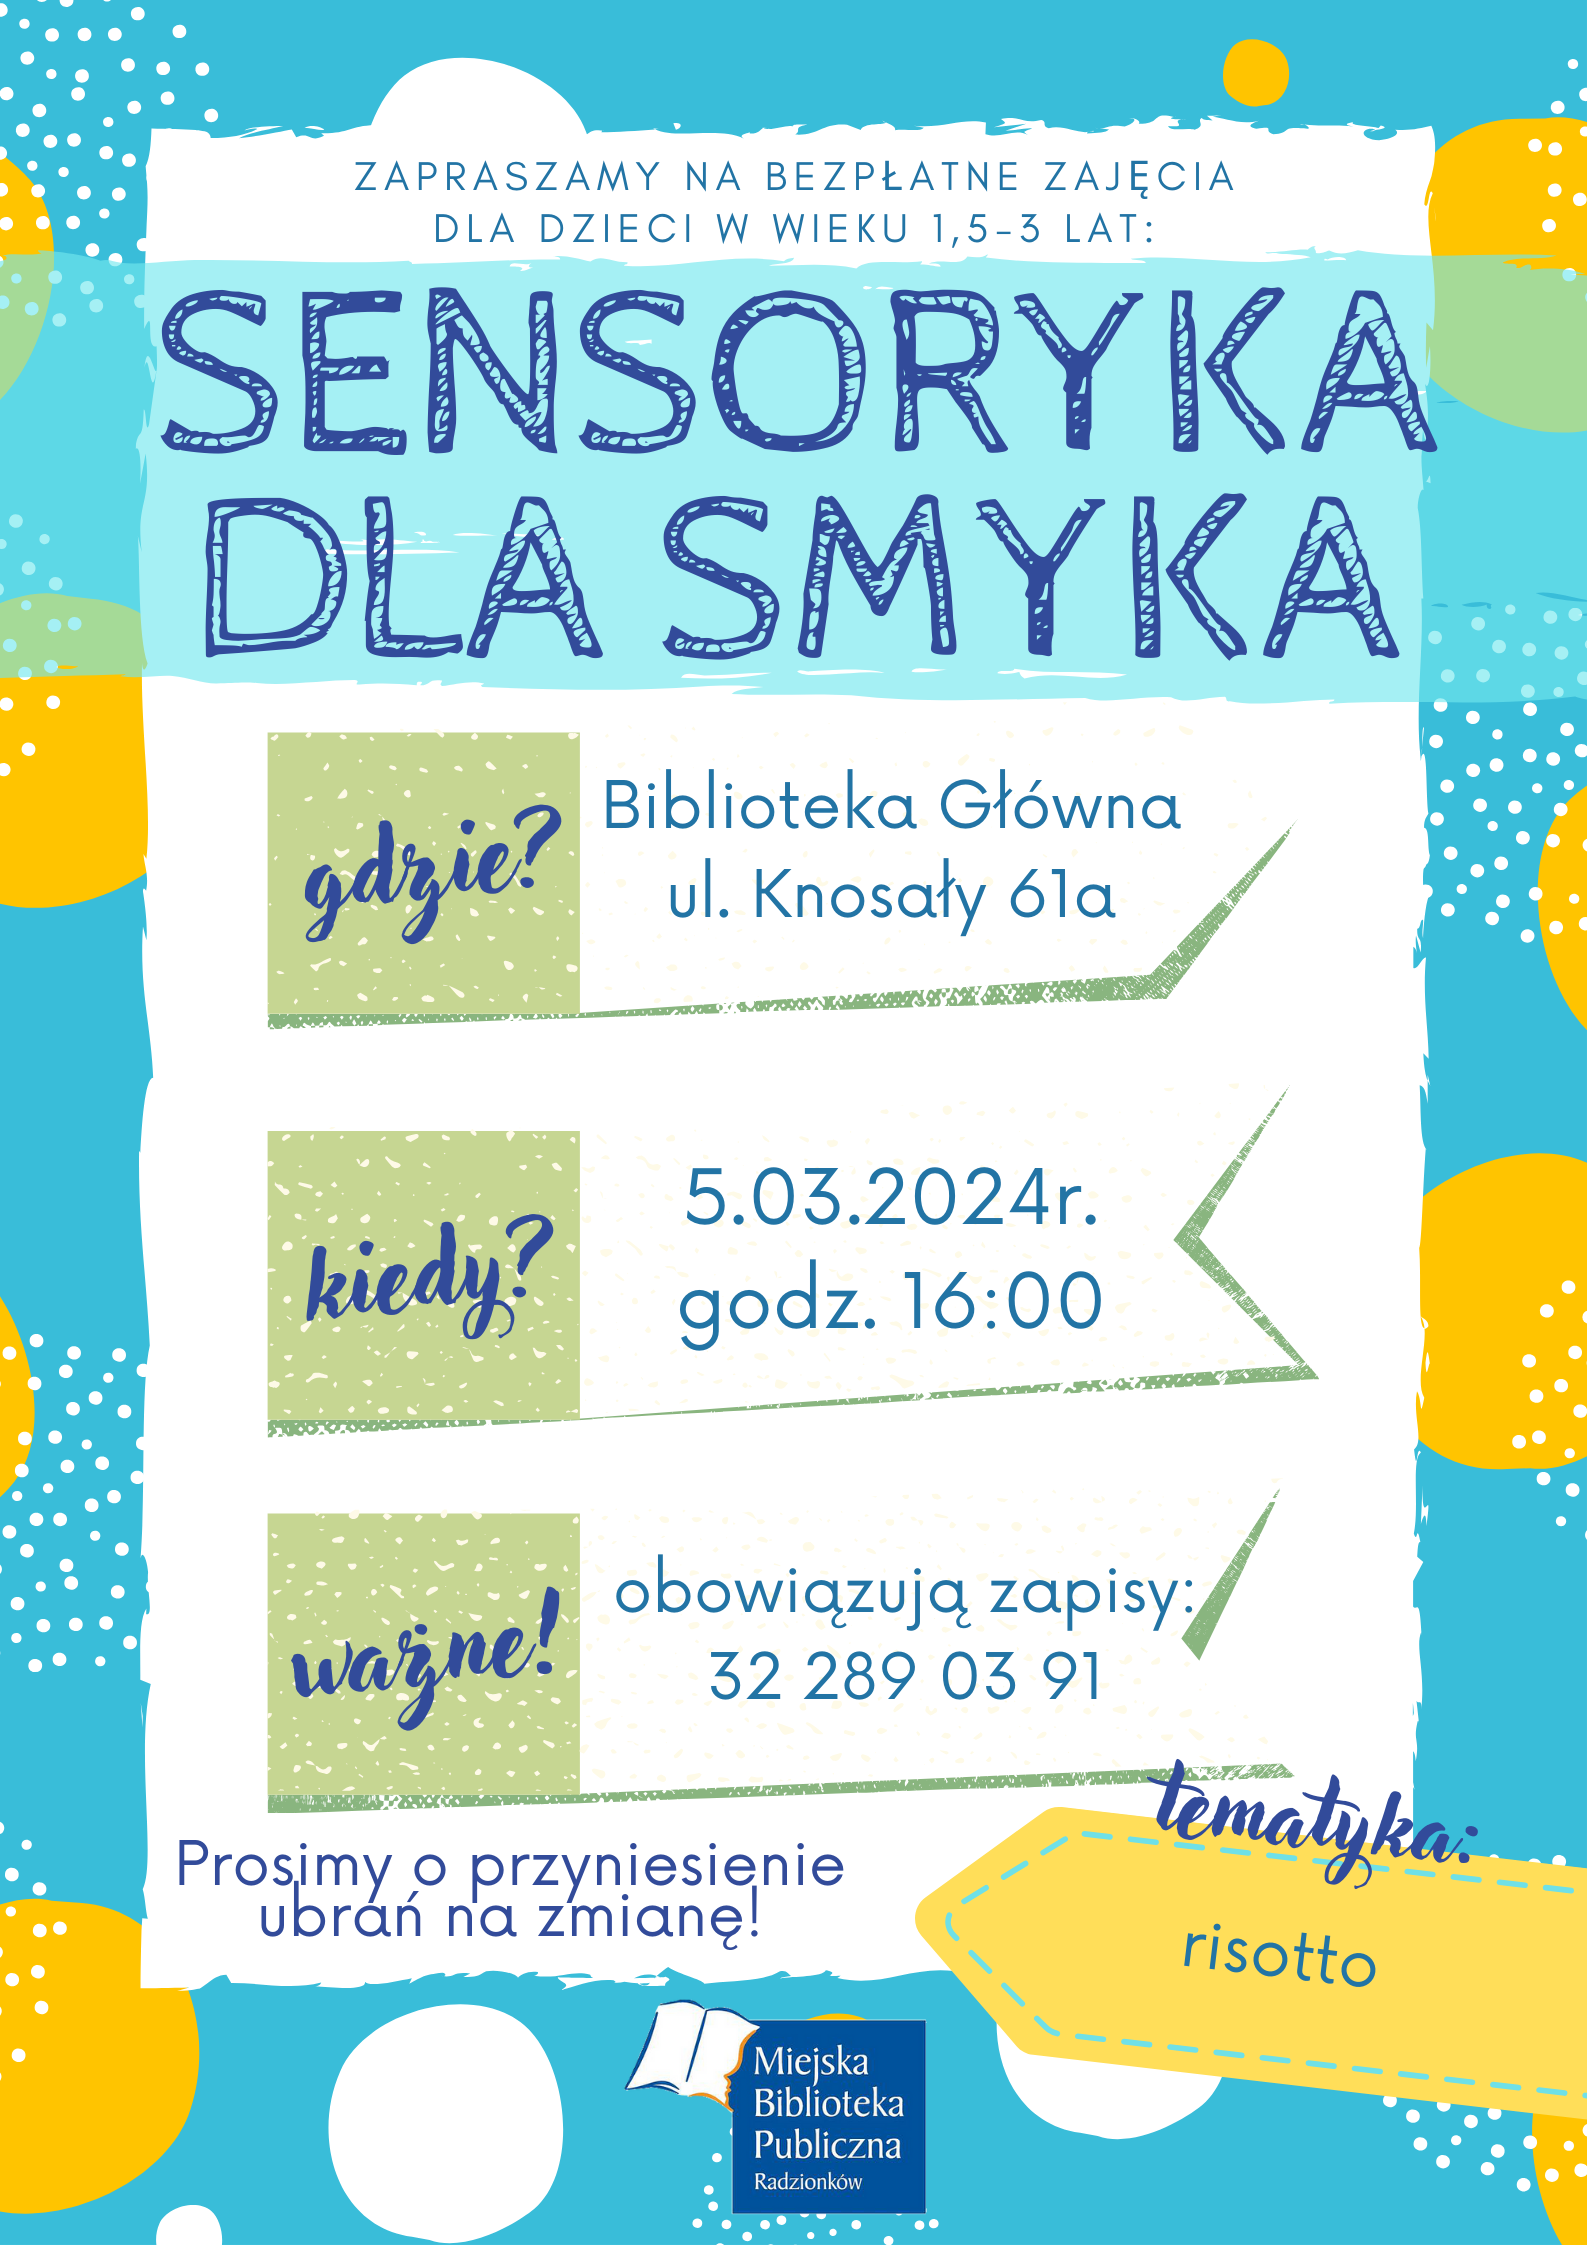 Zajęcia dla dzieci w wieku 0-3 lat z serii Sensoryka dla smyka odbędą się 05.03.2024r. o godzinie 16.00 w Bibliotece głównej